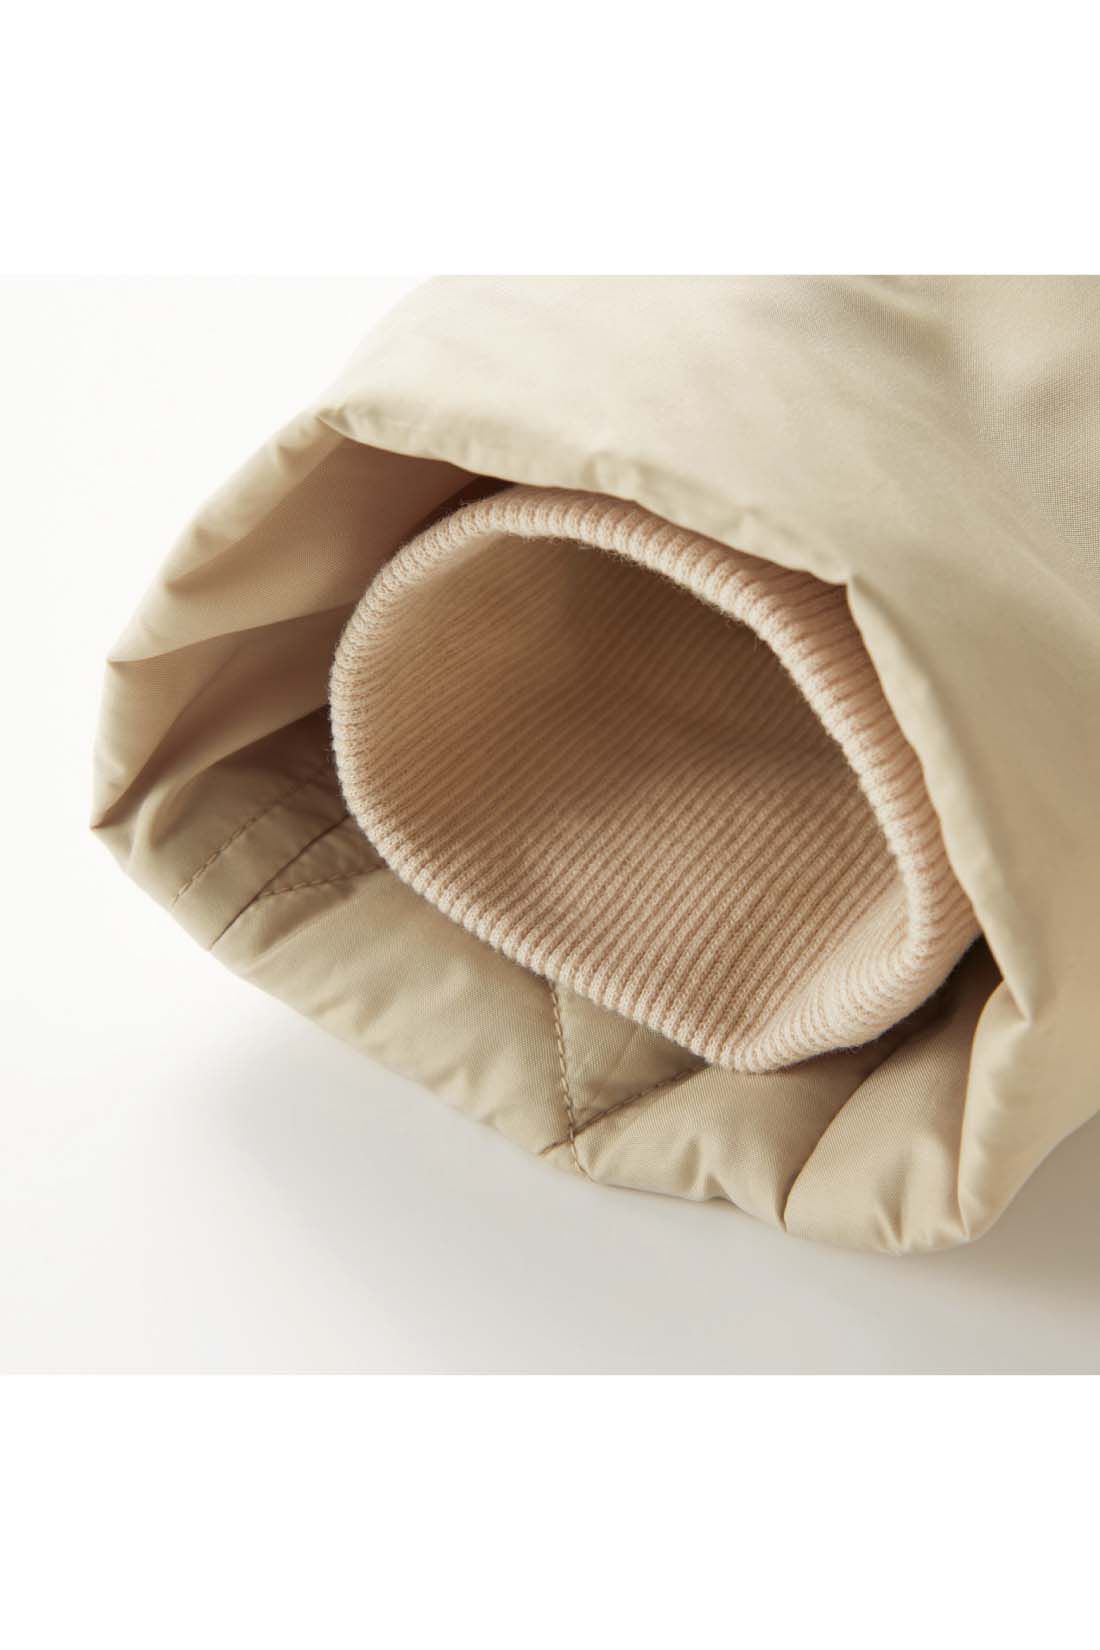 Live in  comfort|リブ イン コンフォート　寝袋みたいにあったか！細見せにこだわった撥水（はっすい）超ロングダウンコート〈ネイビー〉|すっきり見える袖口は、すき間風を防ぐため内側にリブをしのばせています。